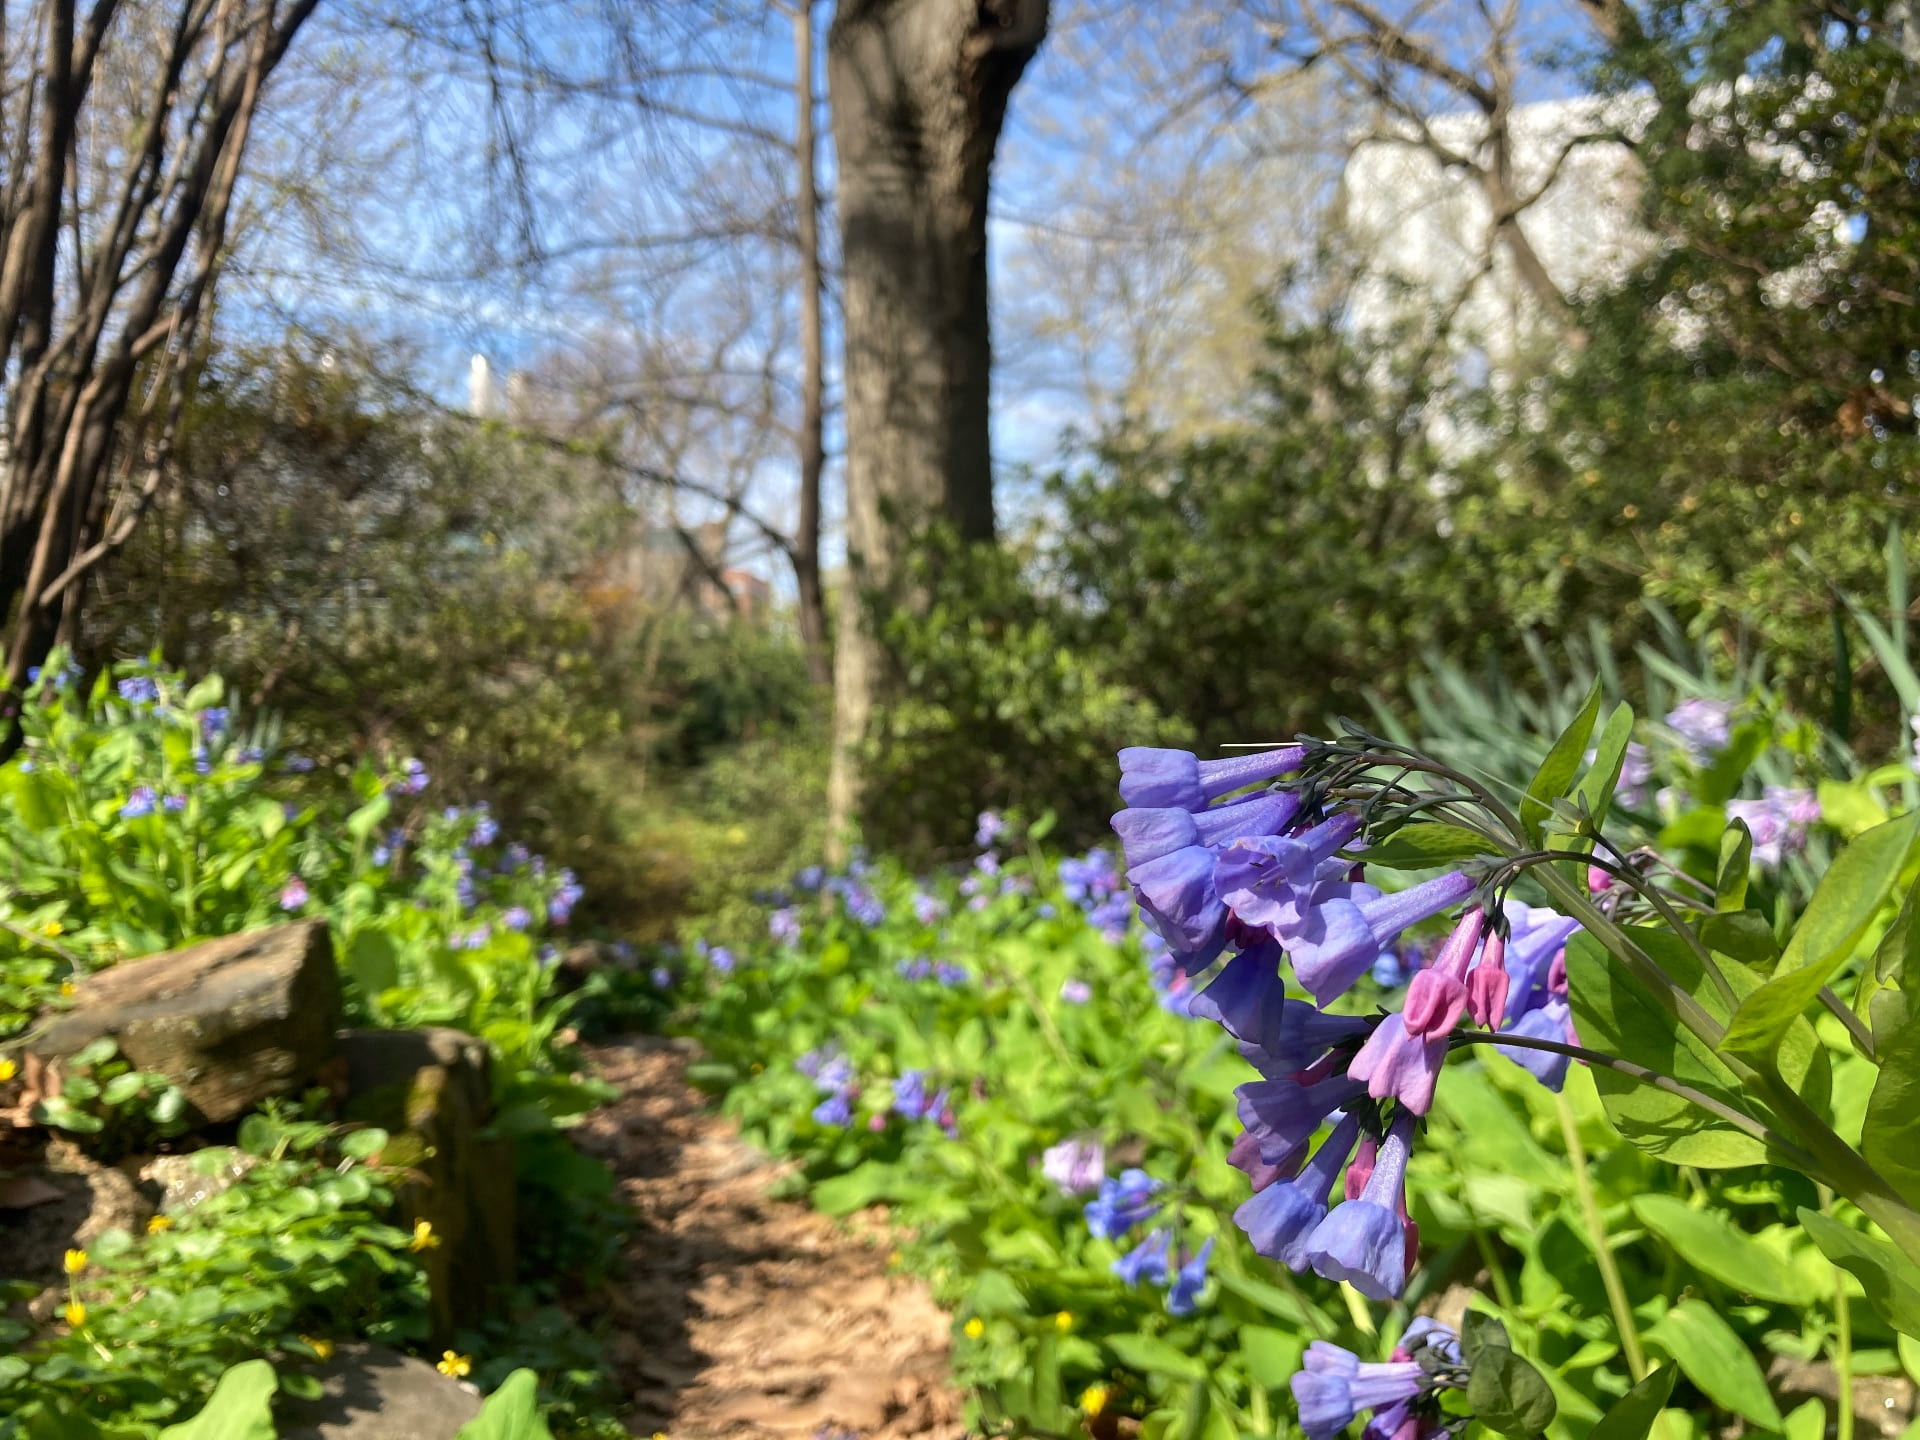 Virginia bluebells, Mertensia virginica, bloom along a hidden path.